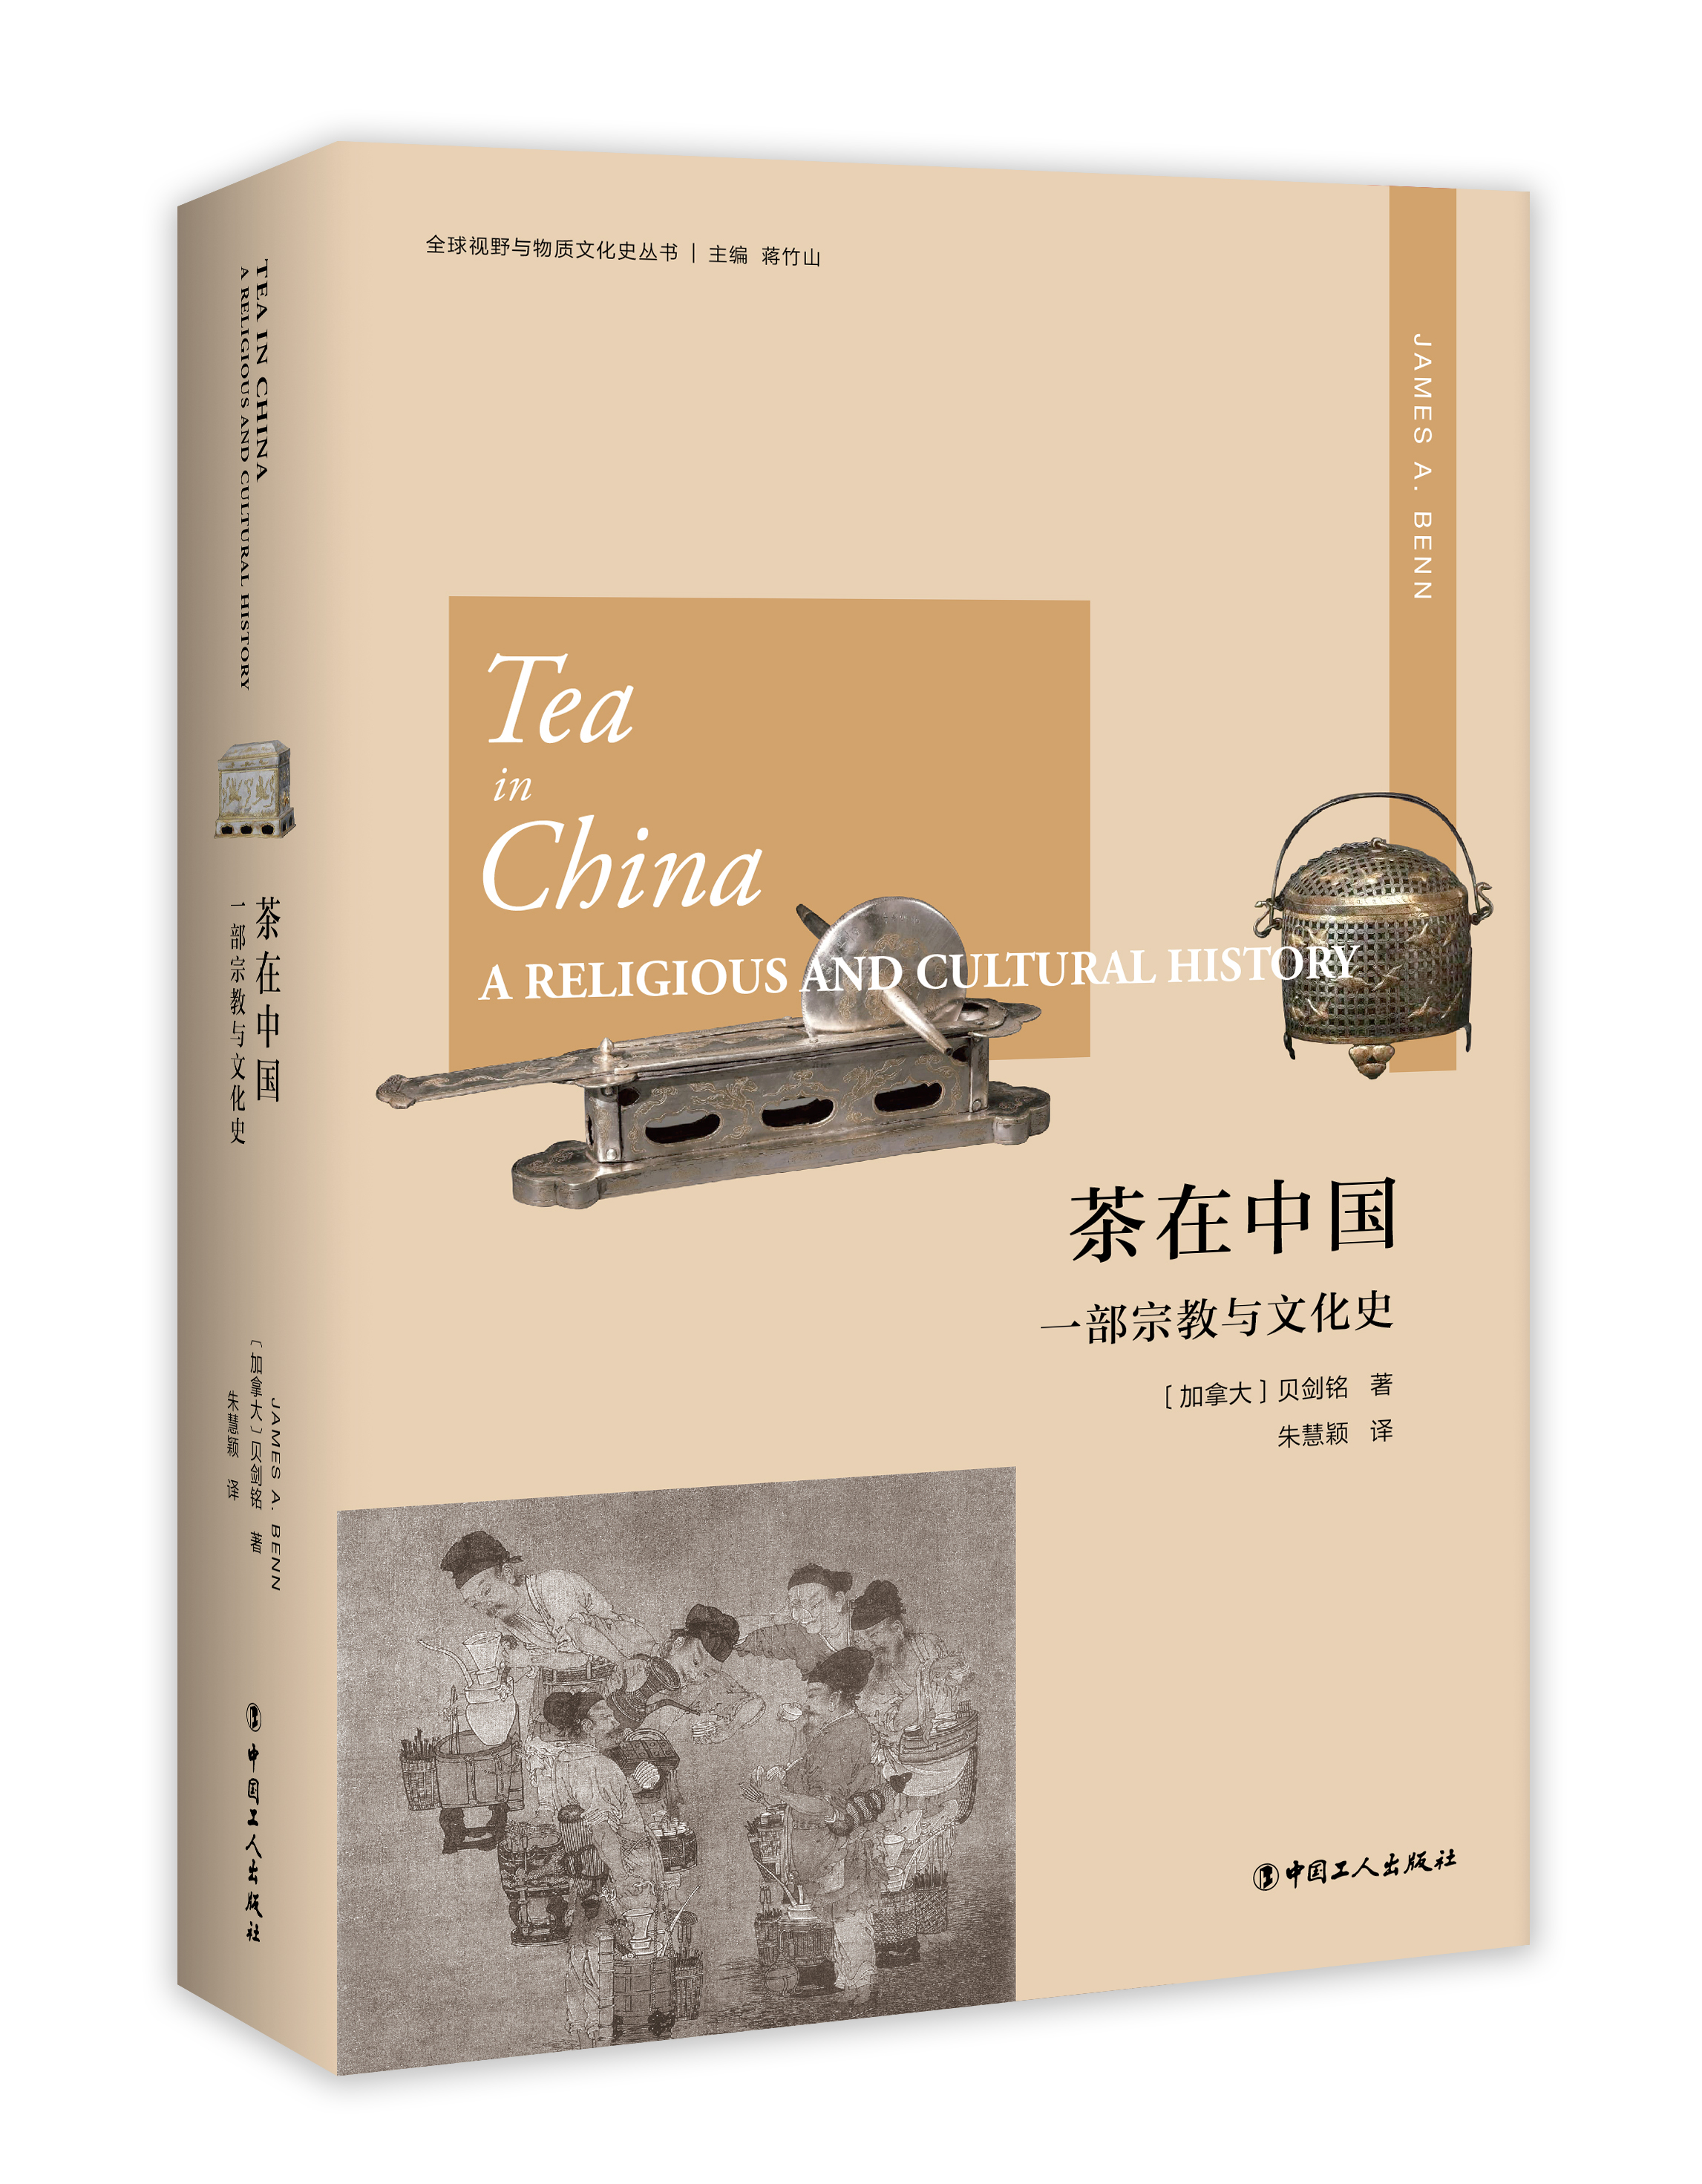 正版图书 茶在中国:一部宗教与文化史:areligiousandculturalhistory 9787500872559贝剑铭中国工人出版社